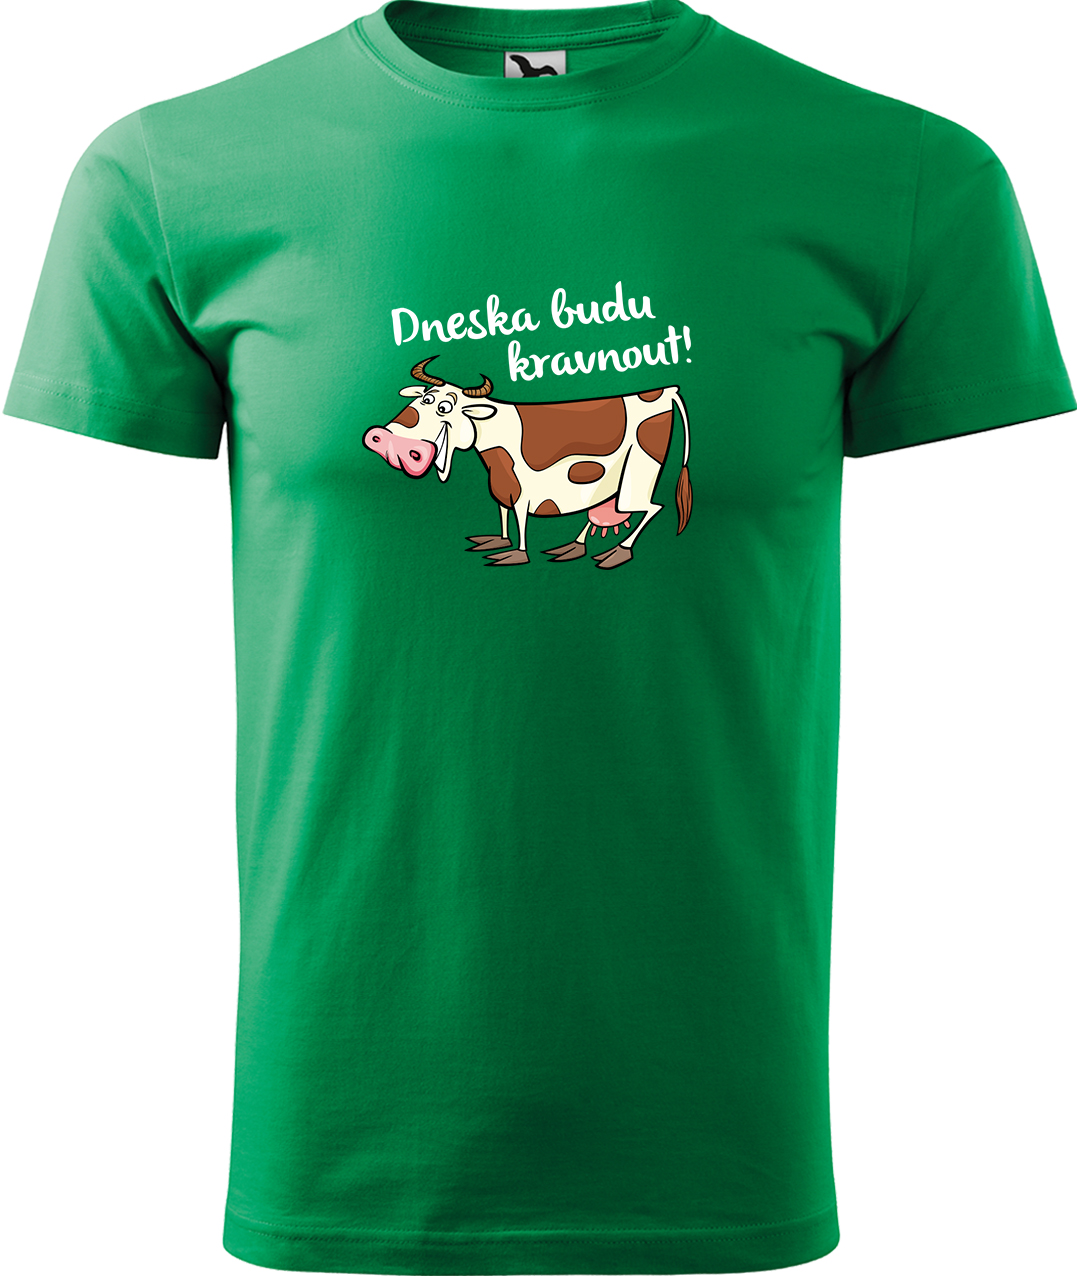 Pánské tričko s krávou - Dneska budu kravnout! Velikost: L, Barva: Středně zelená (16), Střih: pánský